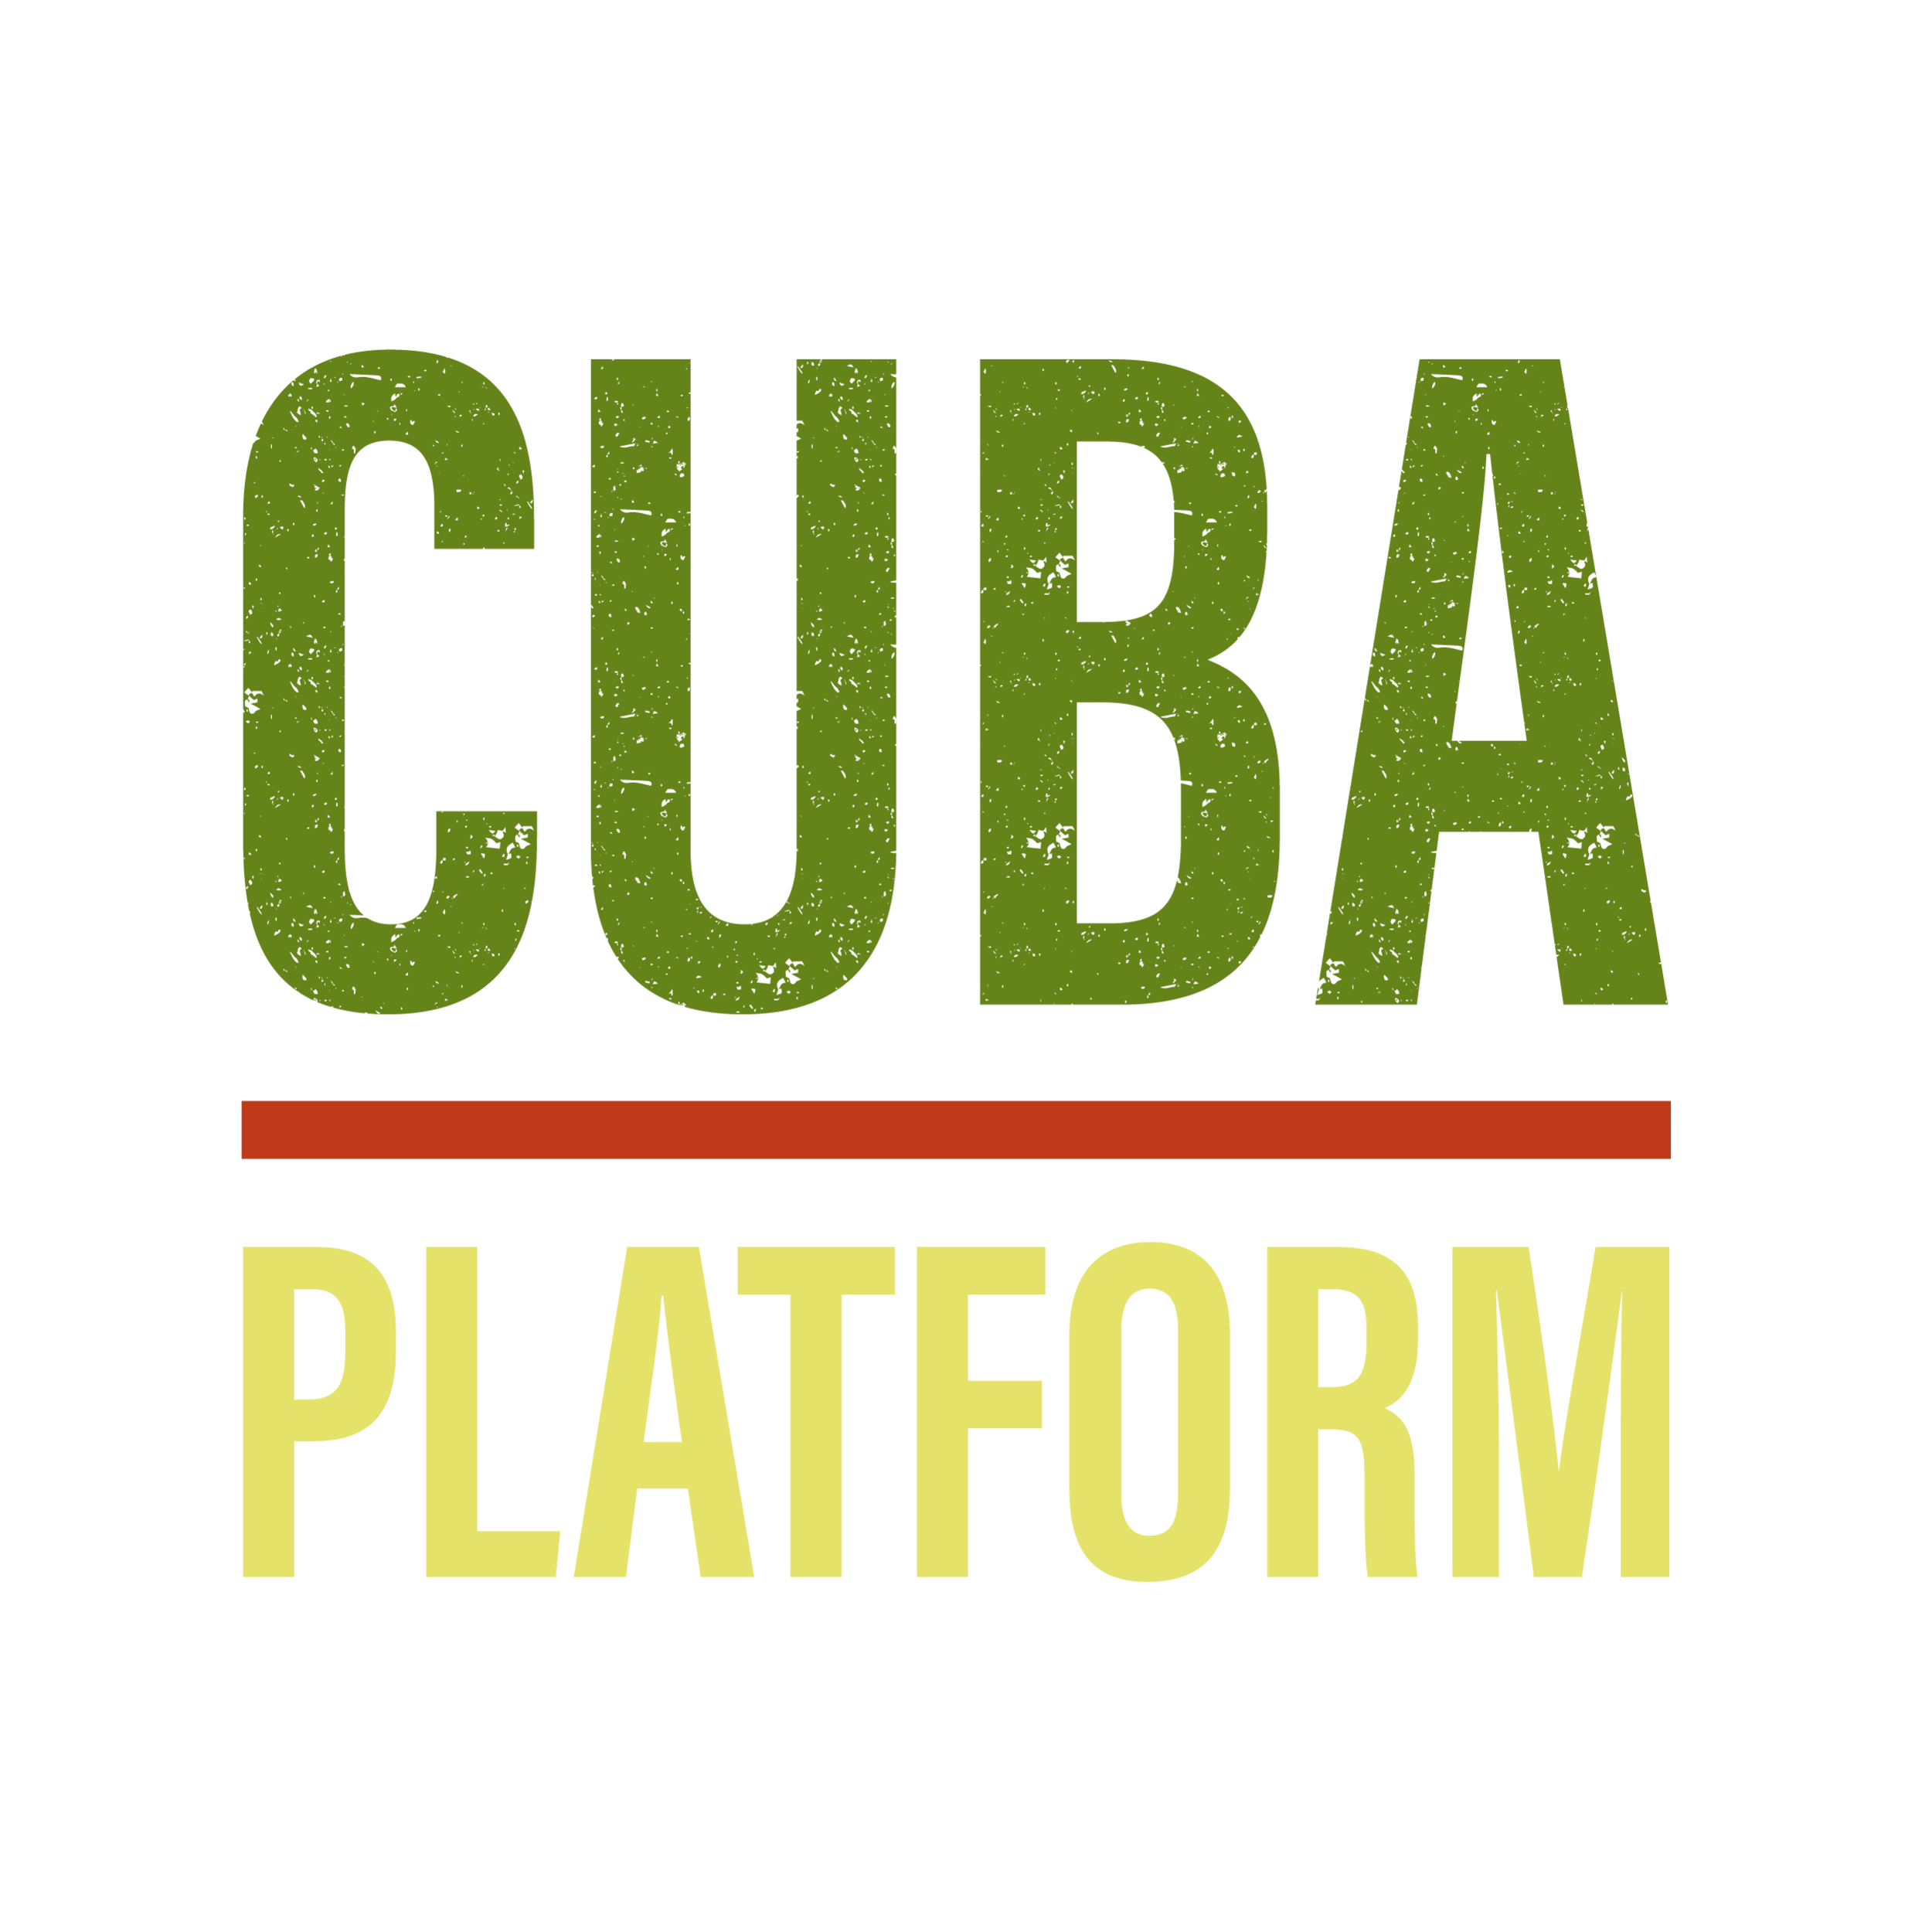 Cuba Platform